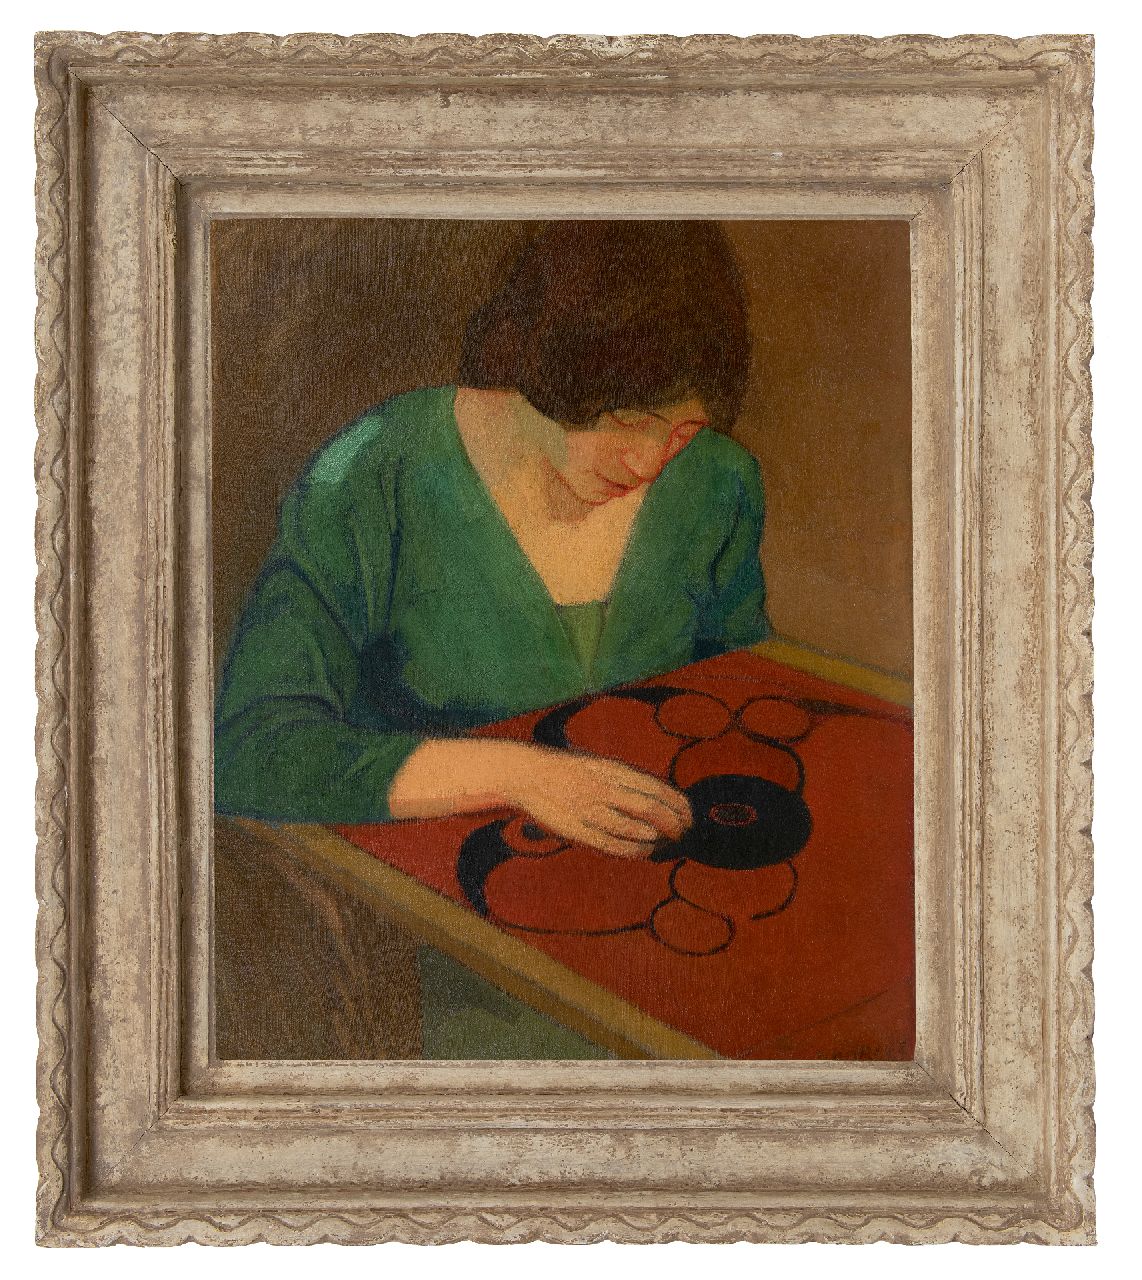 Rees O. van | Otto van Rees | Schilderijen te koop aangeboden | Adya bordurend aan rode broderie, olieverf op doek 65,2 x 54,0 cm, gesigneerd rechtsonder en gedateerd 1910